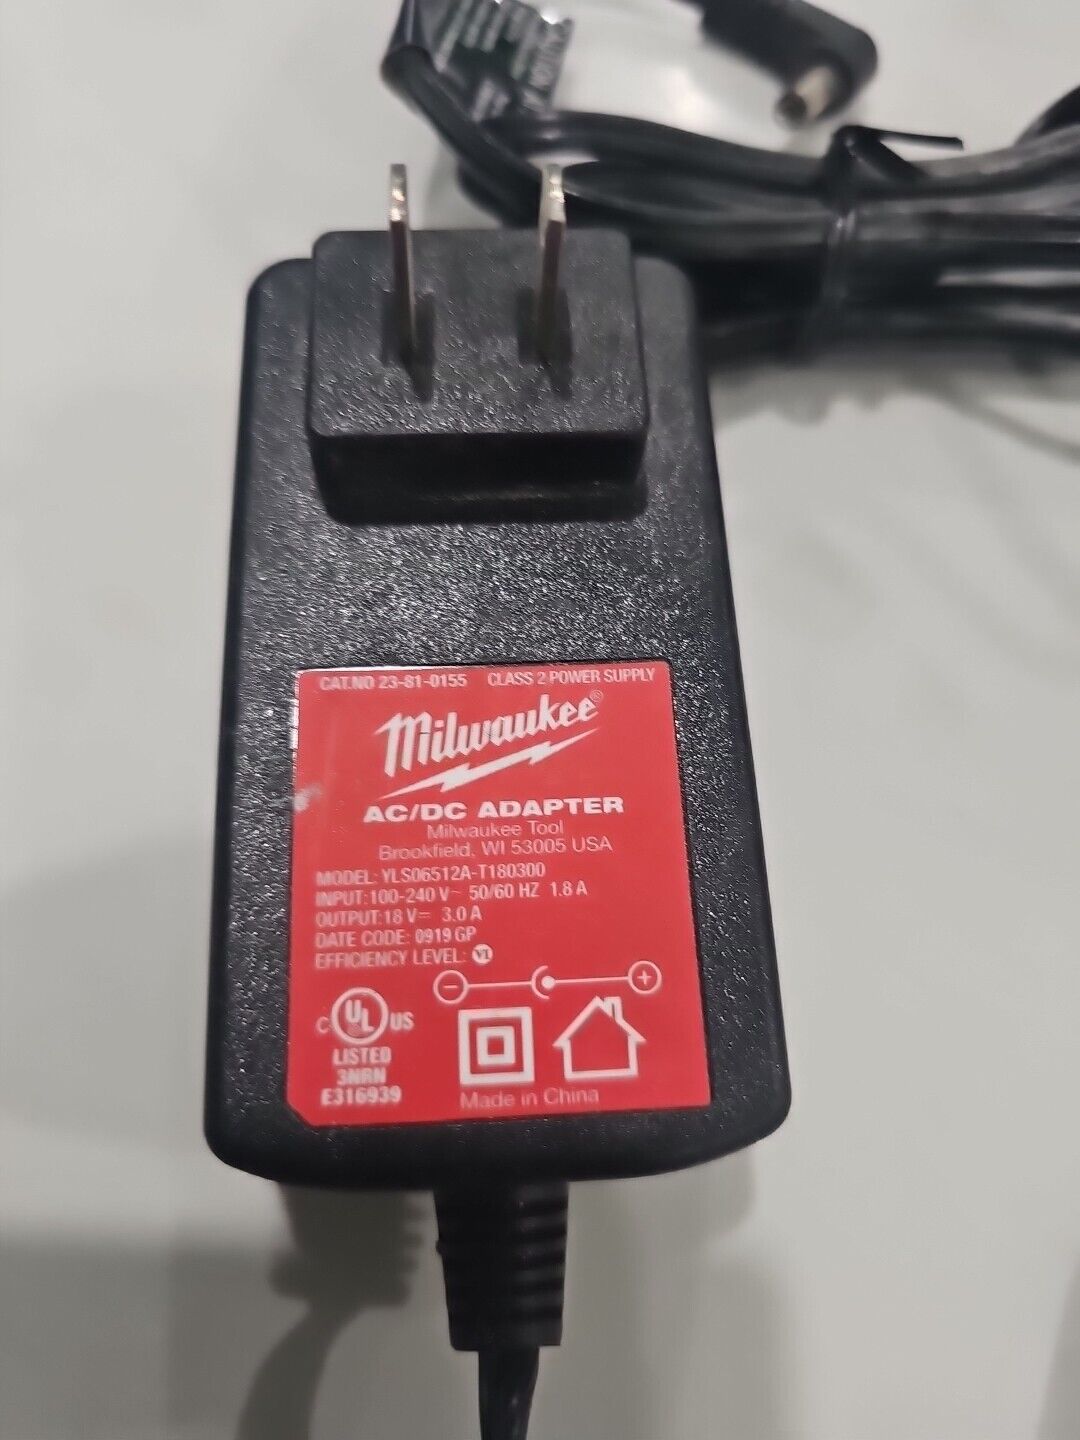 AC Adapter For Milwaukee YLS06512A-T1803 Wireless Jobsite Speaker 23-81-0155 18V